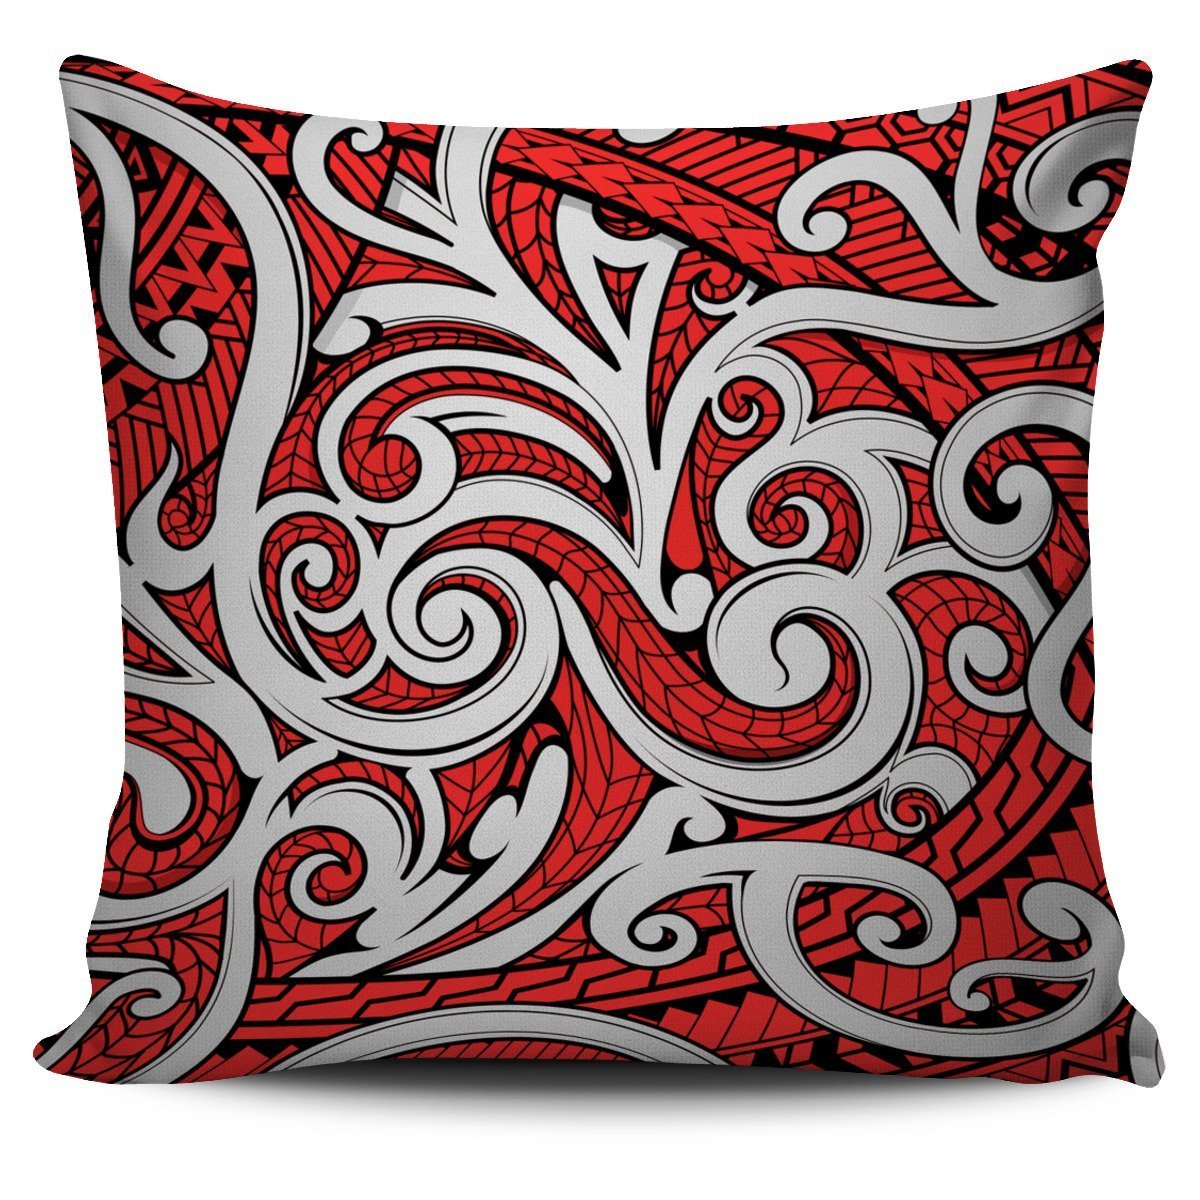 Maori Tribal Ornament Pillow Cover Red - Polynesian Pride